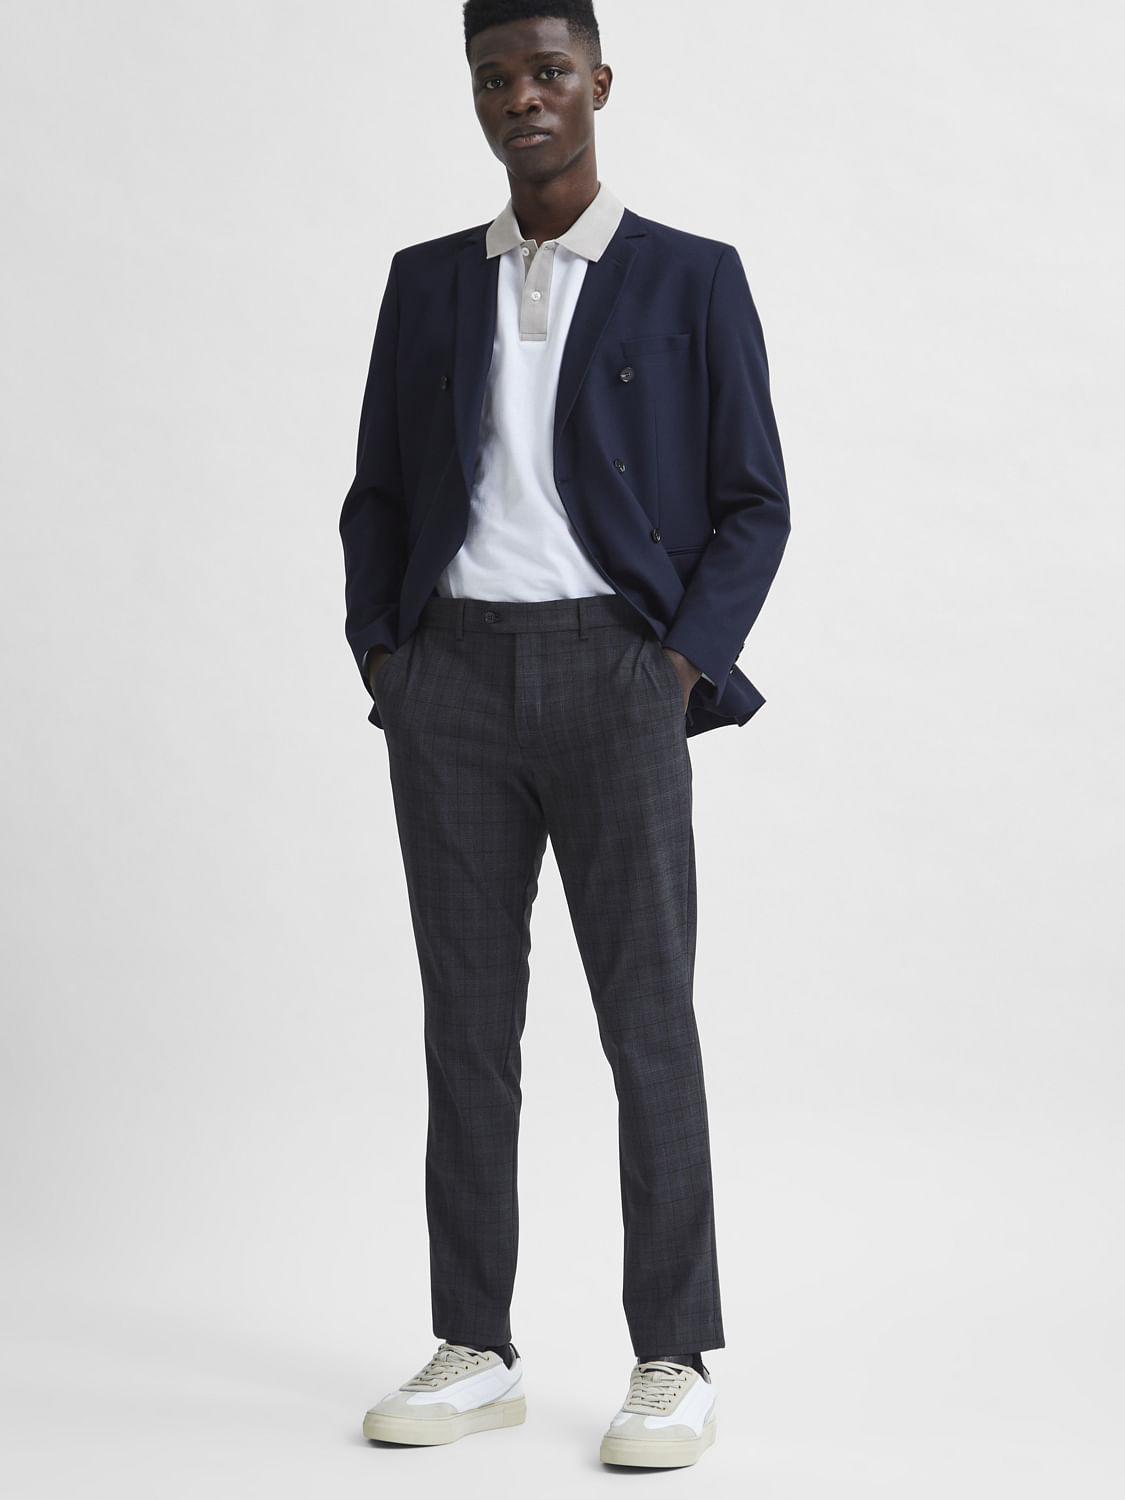 Men's Suits | Charles Tyrwhitt UK